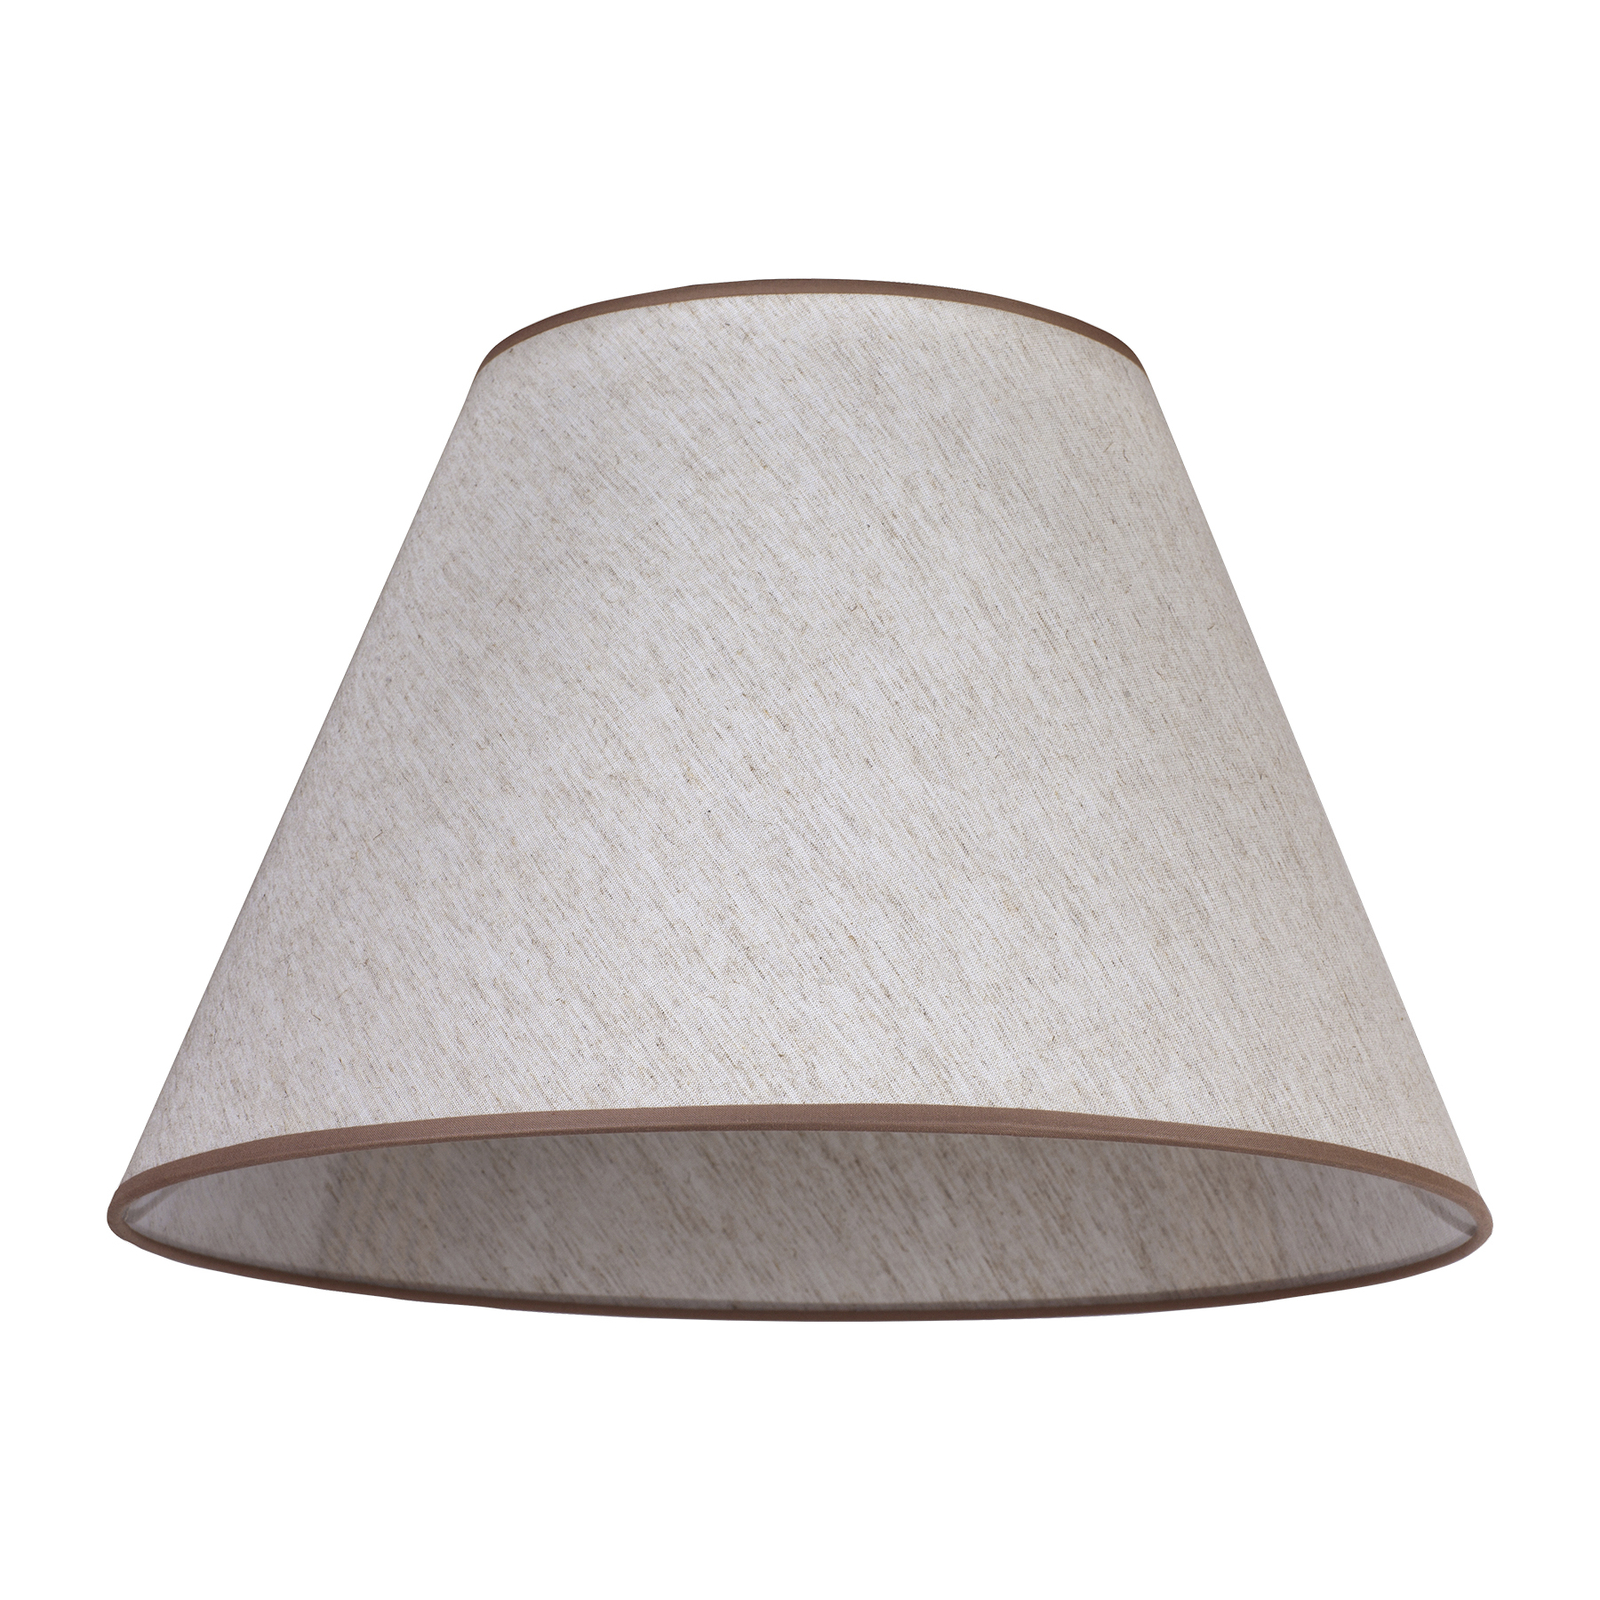 Pseudosofia lampshade for floor lamp ecru/beige